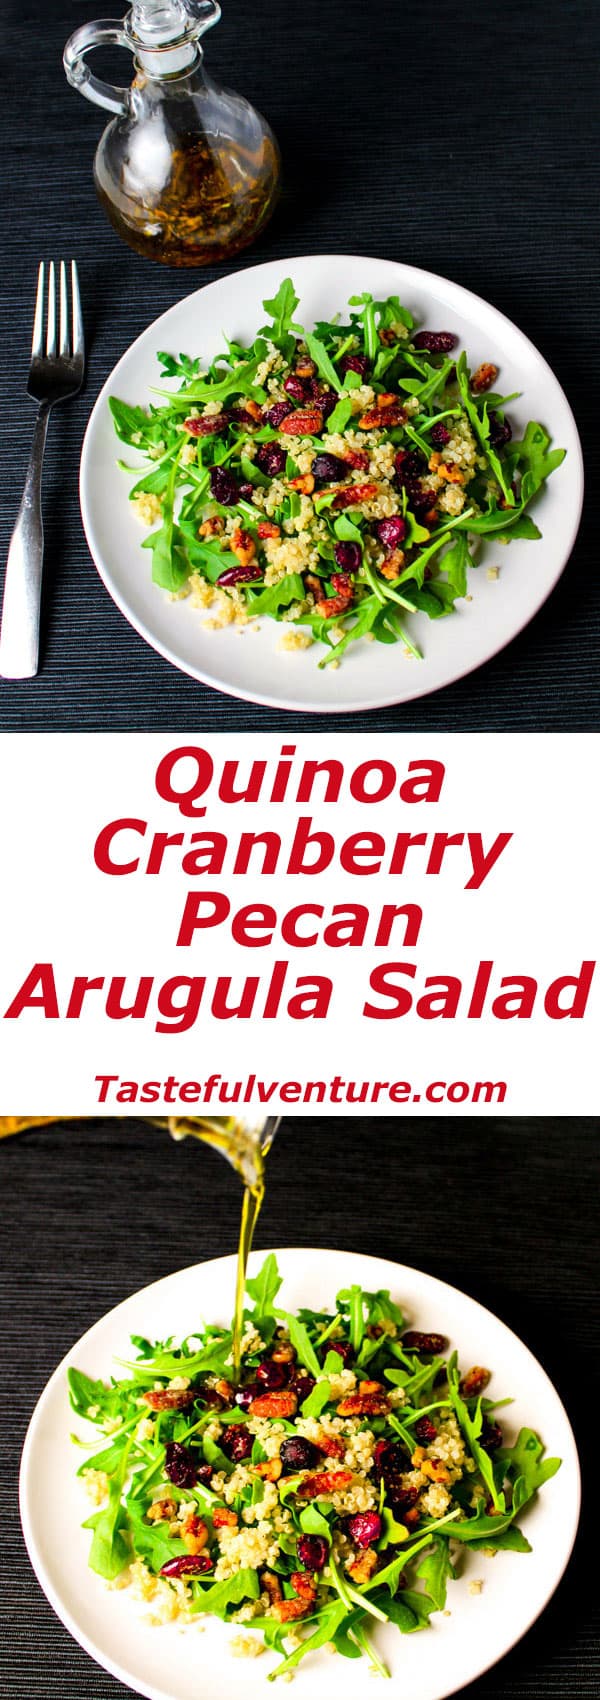 Quinoa Cranberry Pecan Arugula Salad